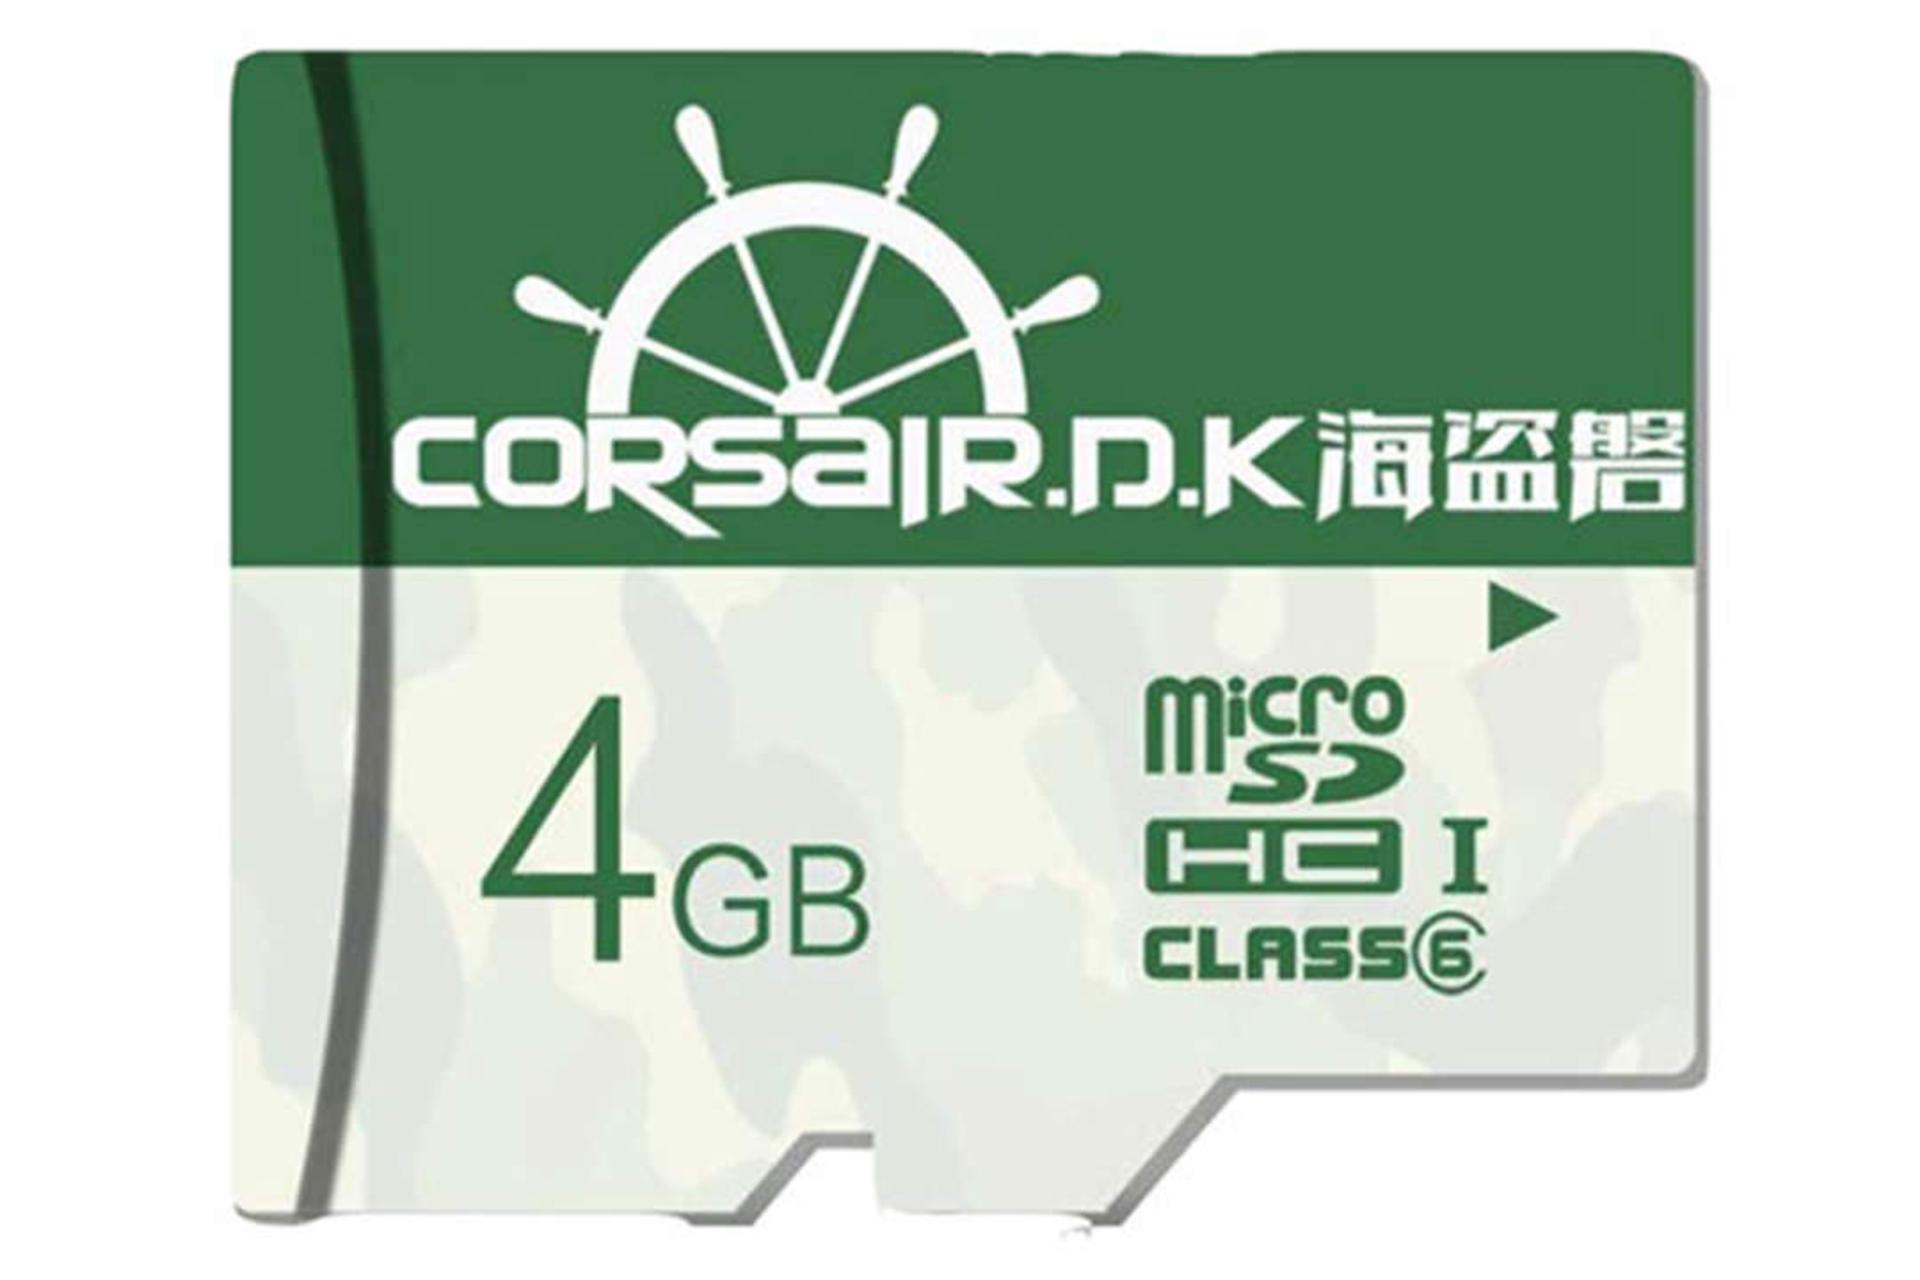 CORSAIR.D.K Ultra-Fast Class 6 UHS-I U1 4GB